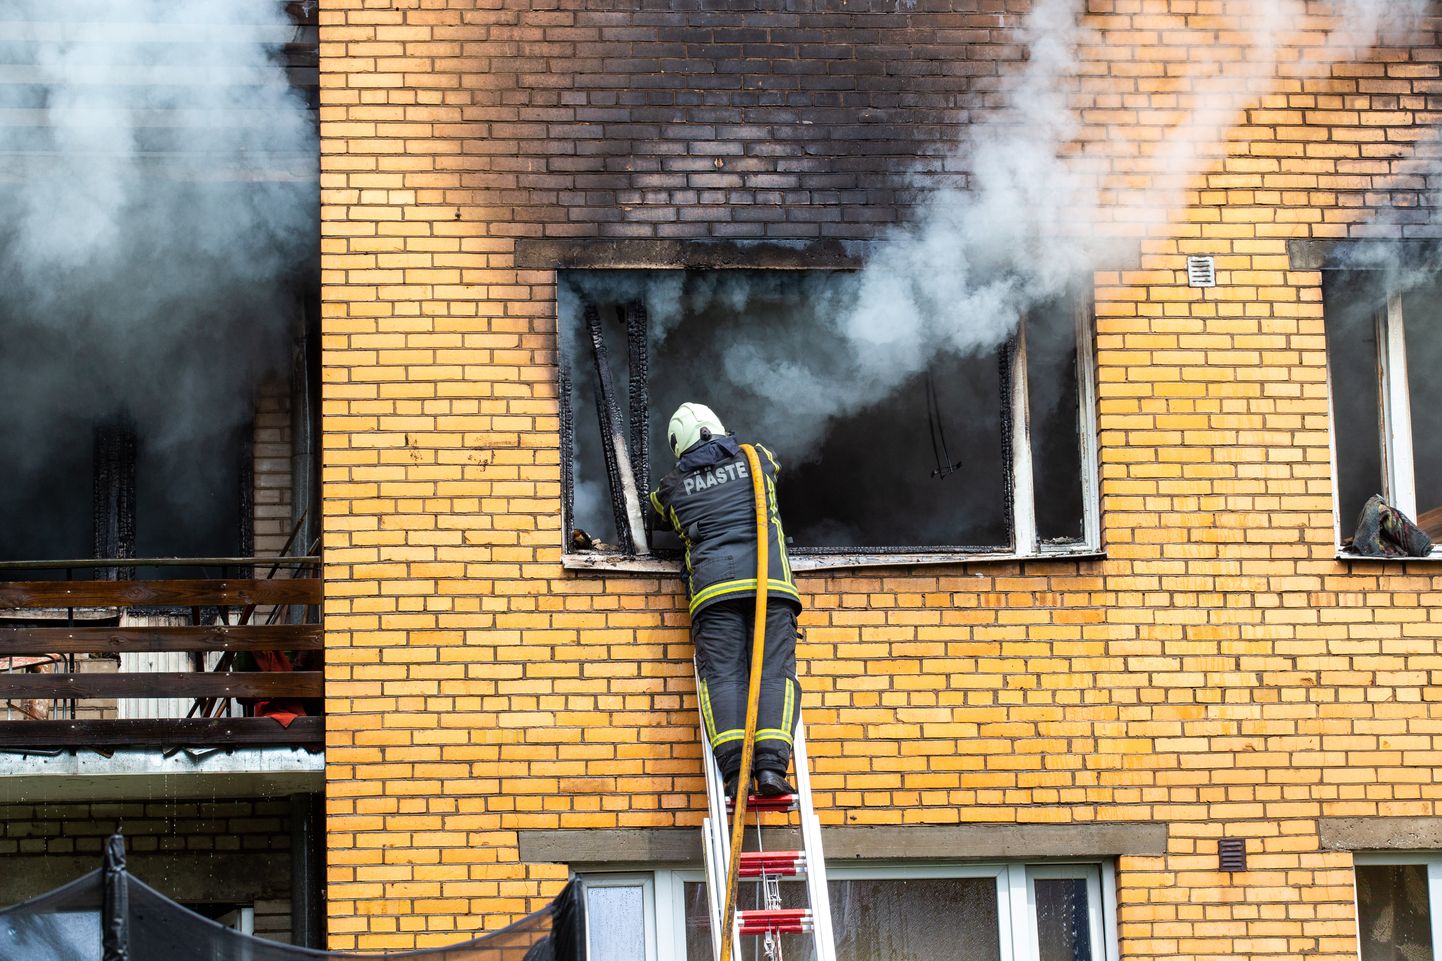 Päästja Jaama 77 gaasiplahvatusest tekkinud tulekahju kustutamas.